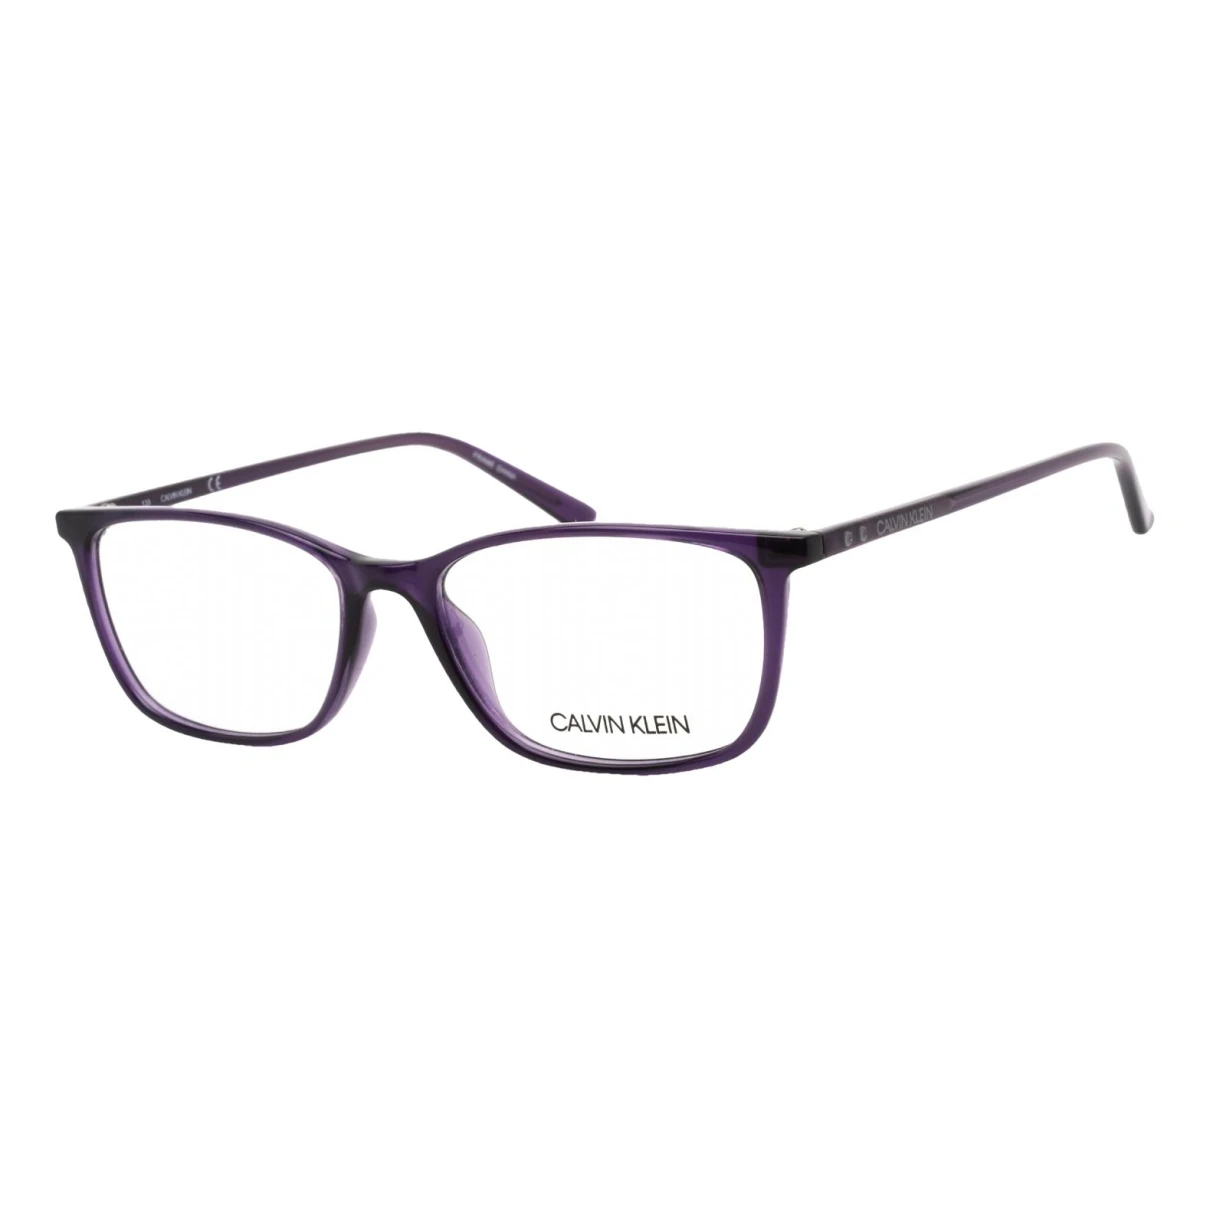 Pre-owned Calvin Klein Sunglasses In Purple